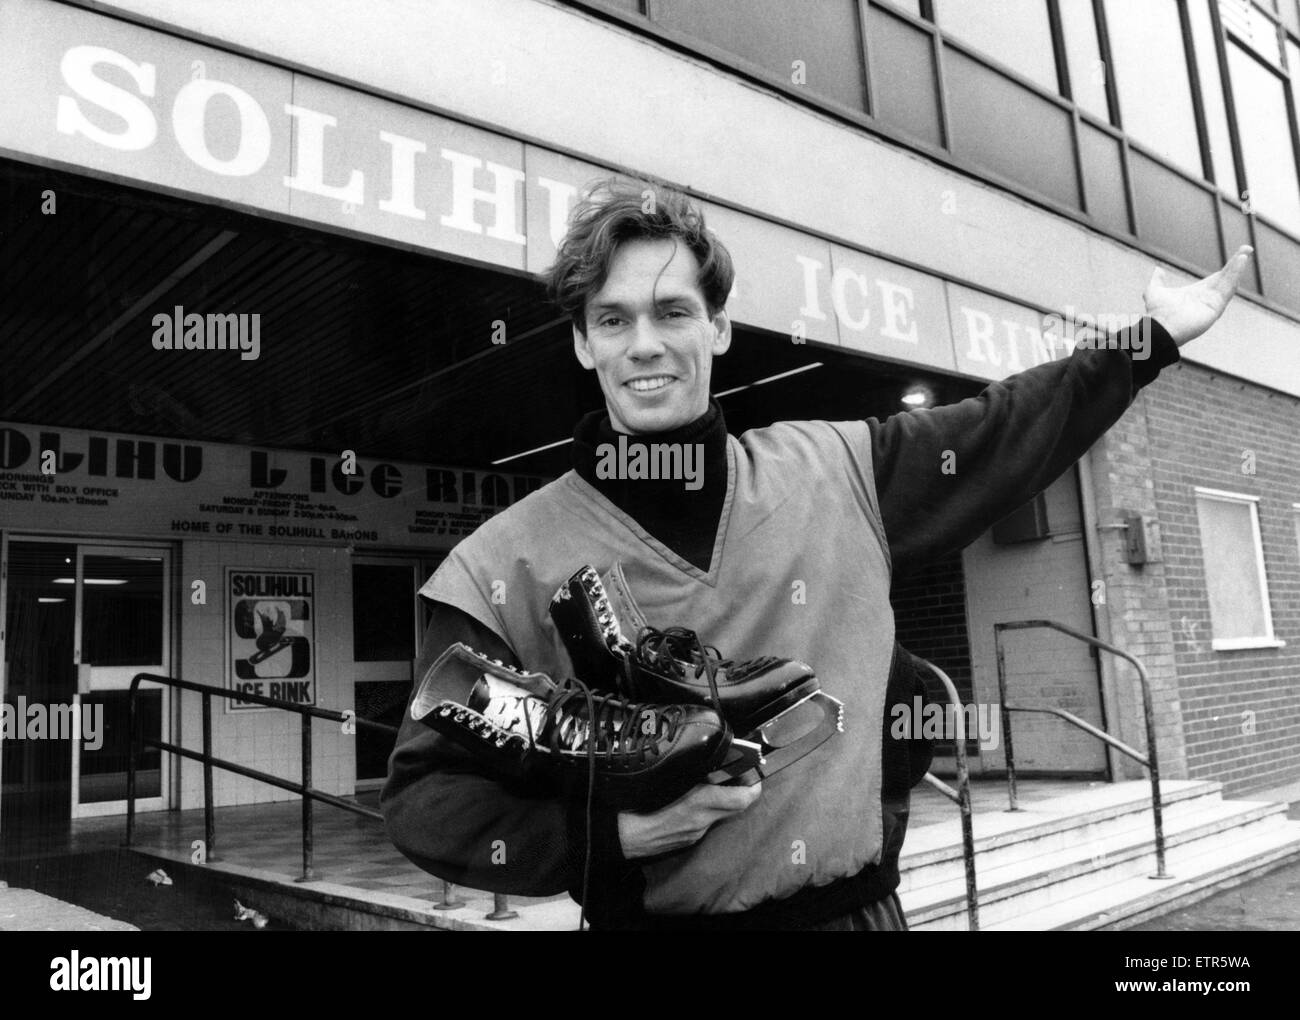 John Curry, ex Europei di pattinaggio di figura champion, arriva a Solihull pista di pattinaggio su ghiaccio, dove spera di poter passare su un paio di consigli per giovani promesse. Il 10 giugno 1988. Foto Stock